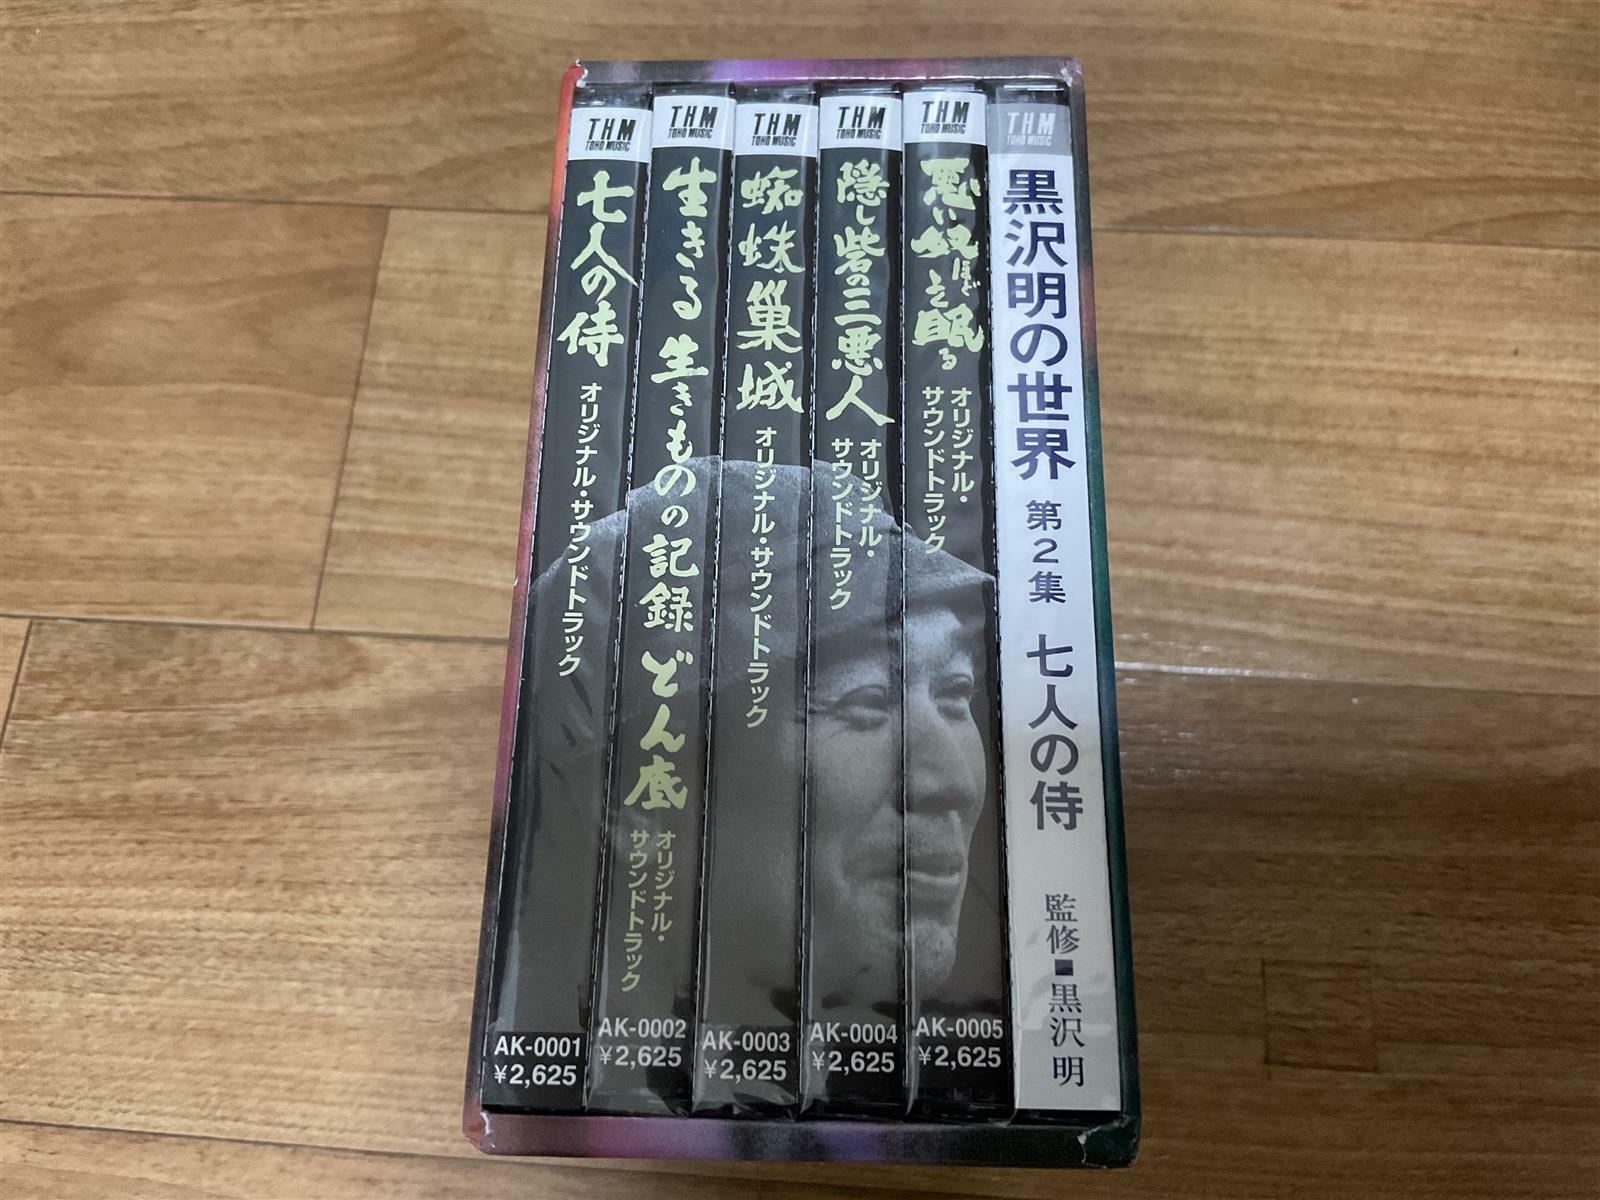 [중고] 구로사와 아키라 FILM MUSIC OF AKIRA KUROSAWA THE COMPLETE EDITION Vol. 1 (BOX-SET) (6CDs)